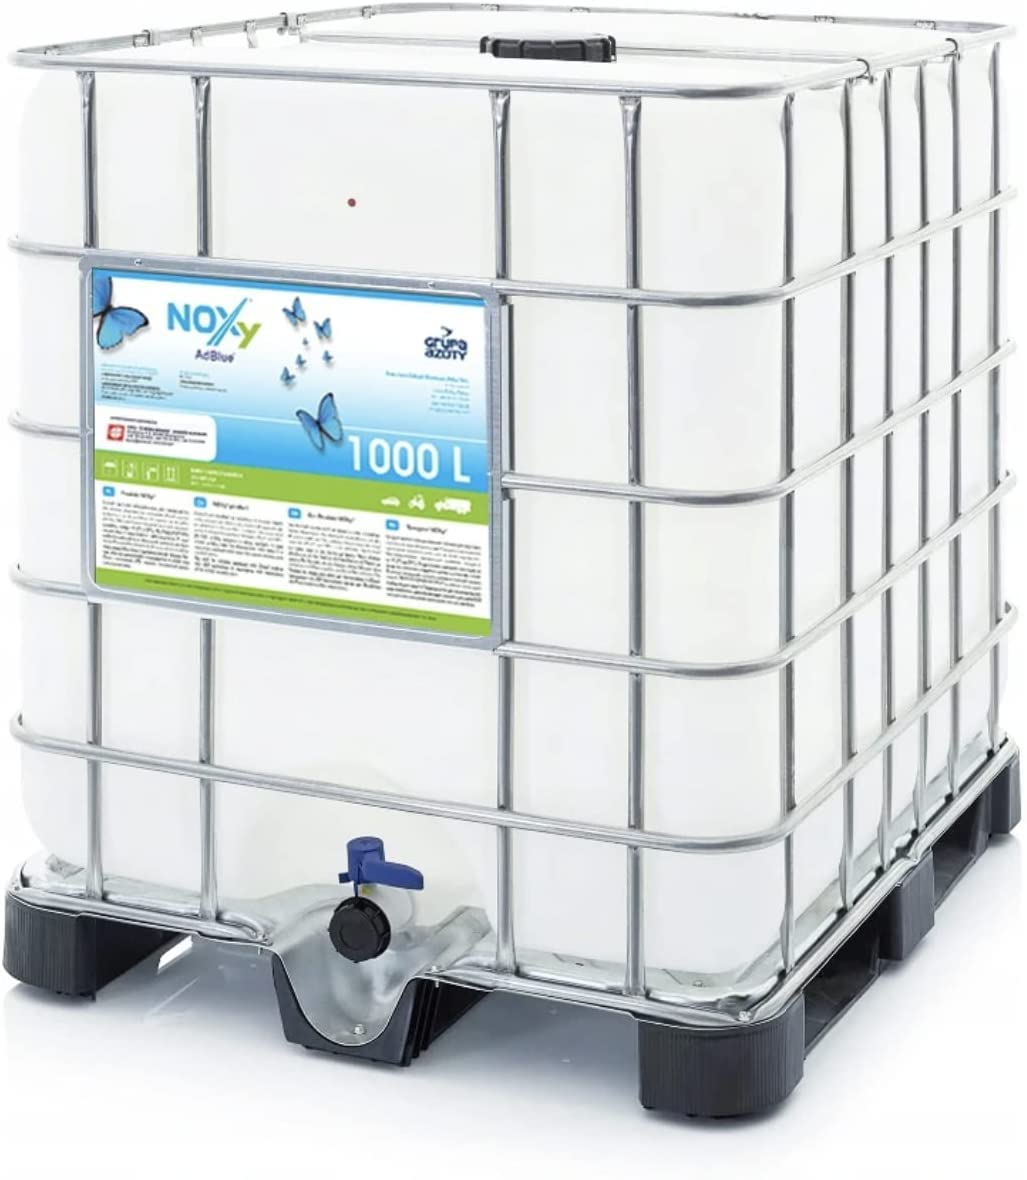 NOXy AdBlue 1000 Liter AdBlue® IBC Container Harnstofflösung Diesel Additiv von NOXy